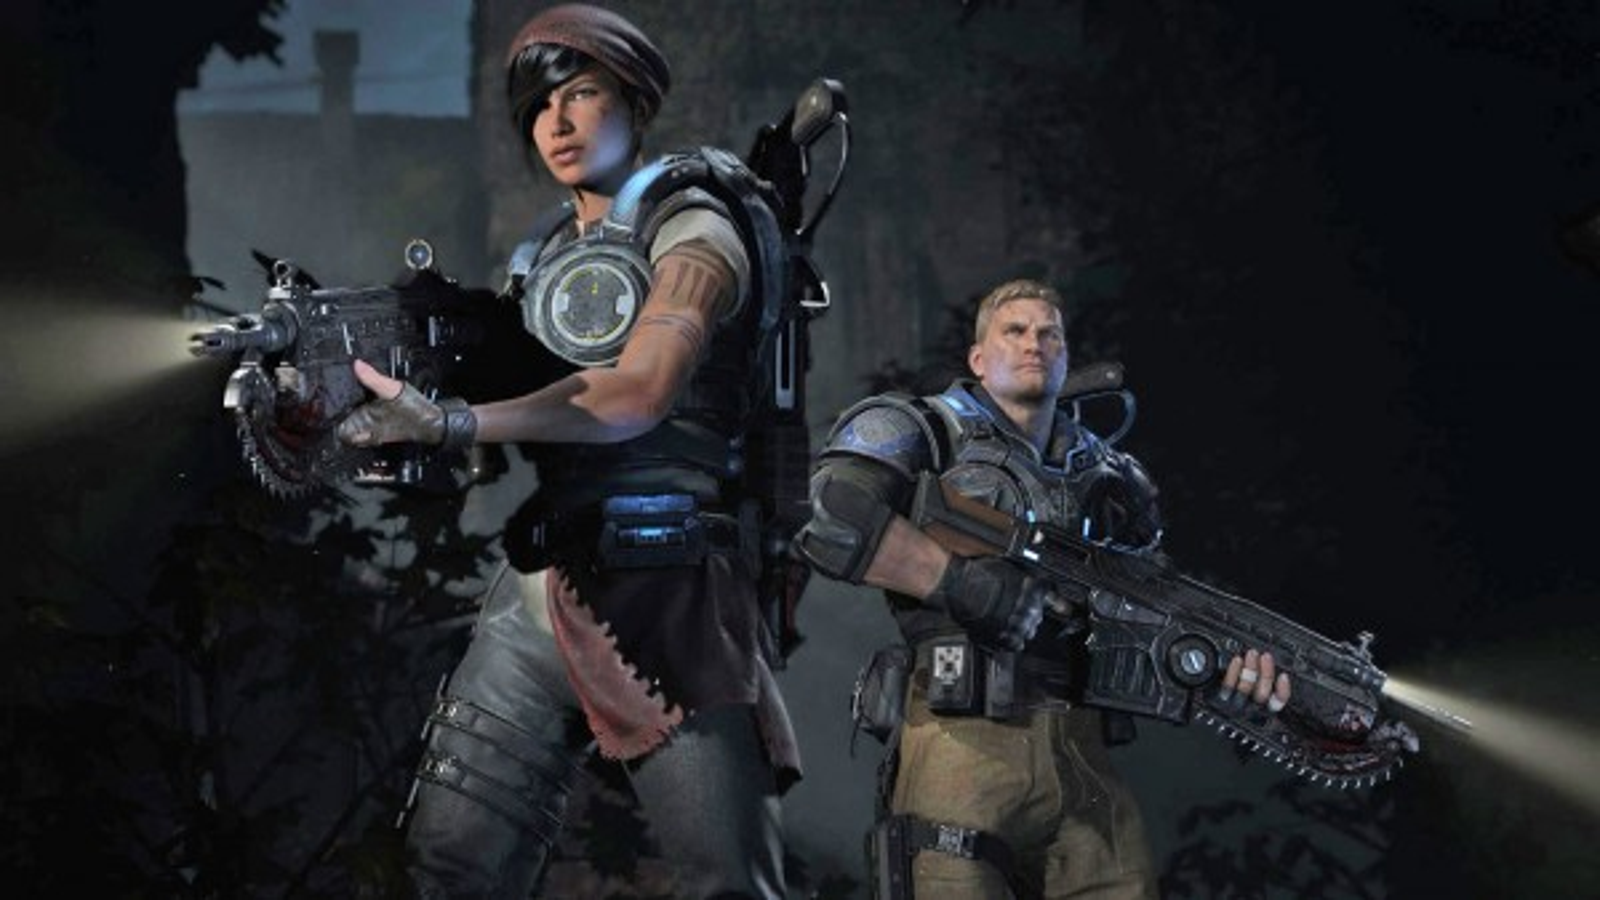 Gears of War 4 to Include Splitscreen Co-op on PC, LAN and Cross